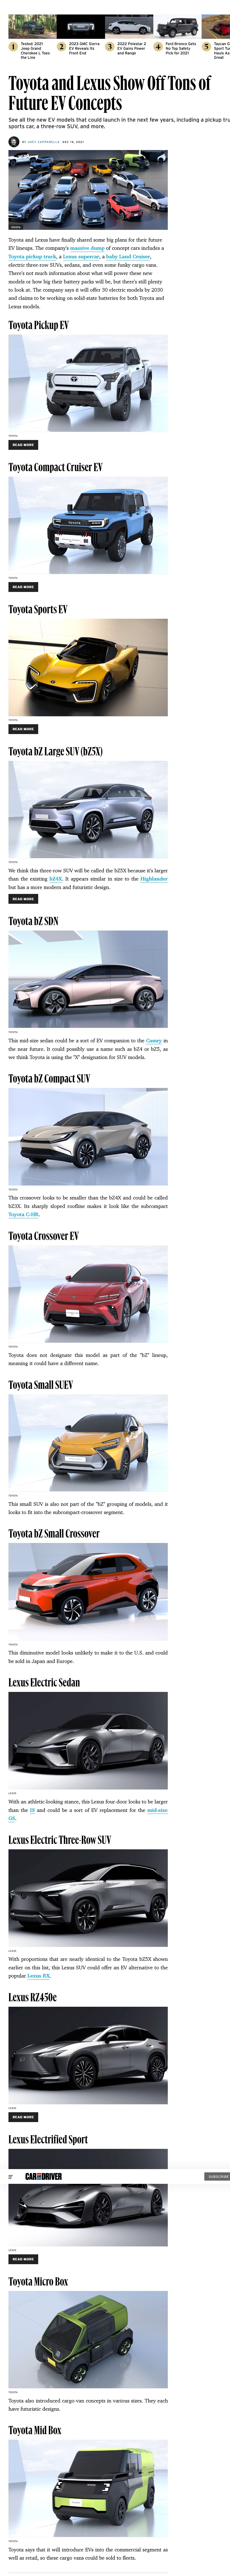 トヨタの電気自動車16種を発売